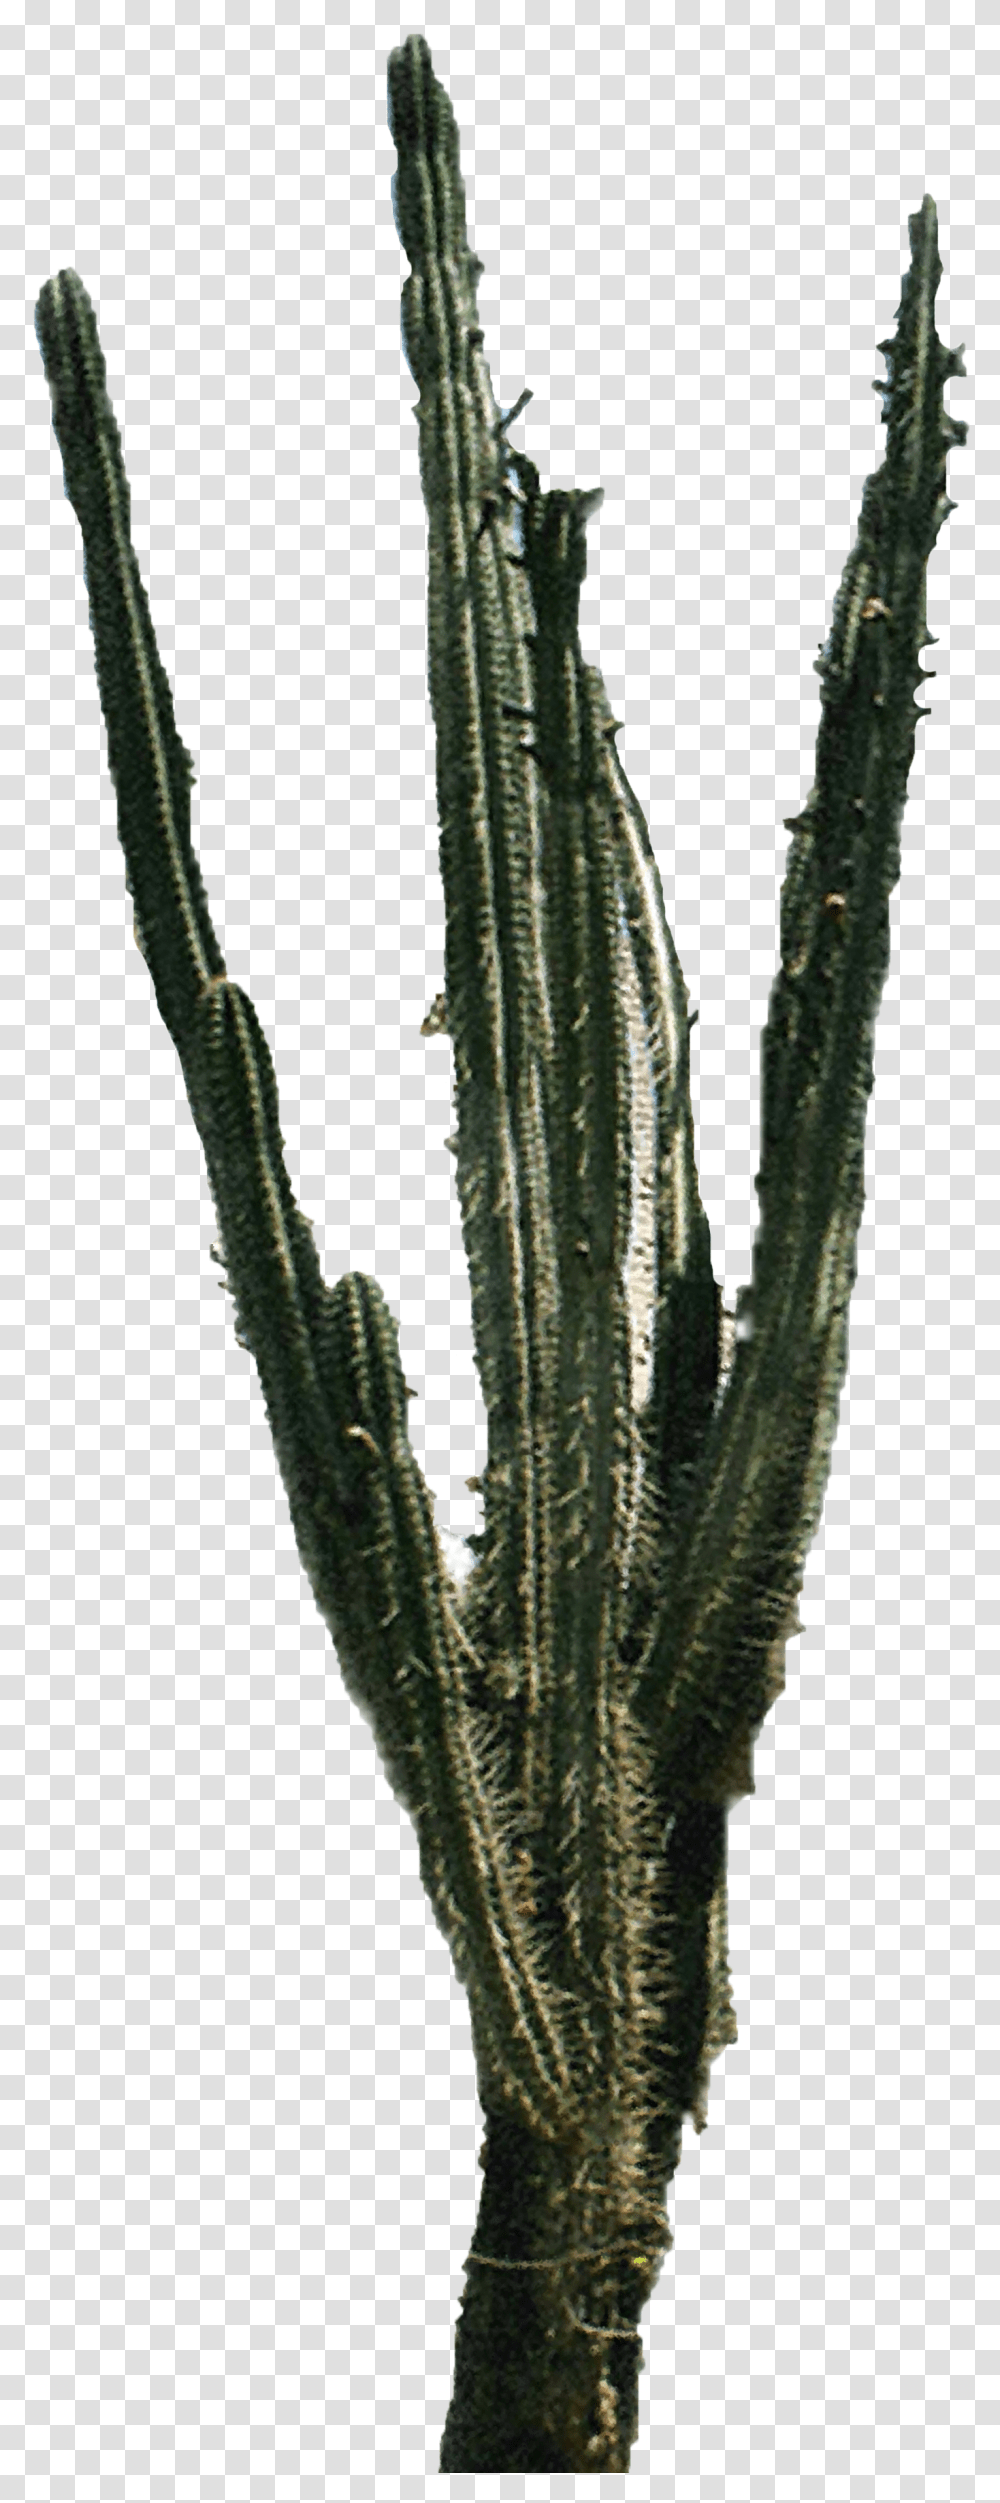 Cactus Images Portable Network Graphics, Plant, Leaf Transparent Png